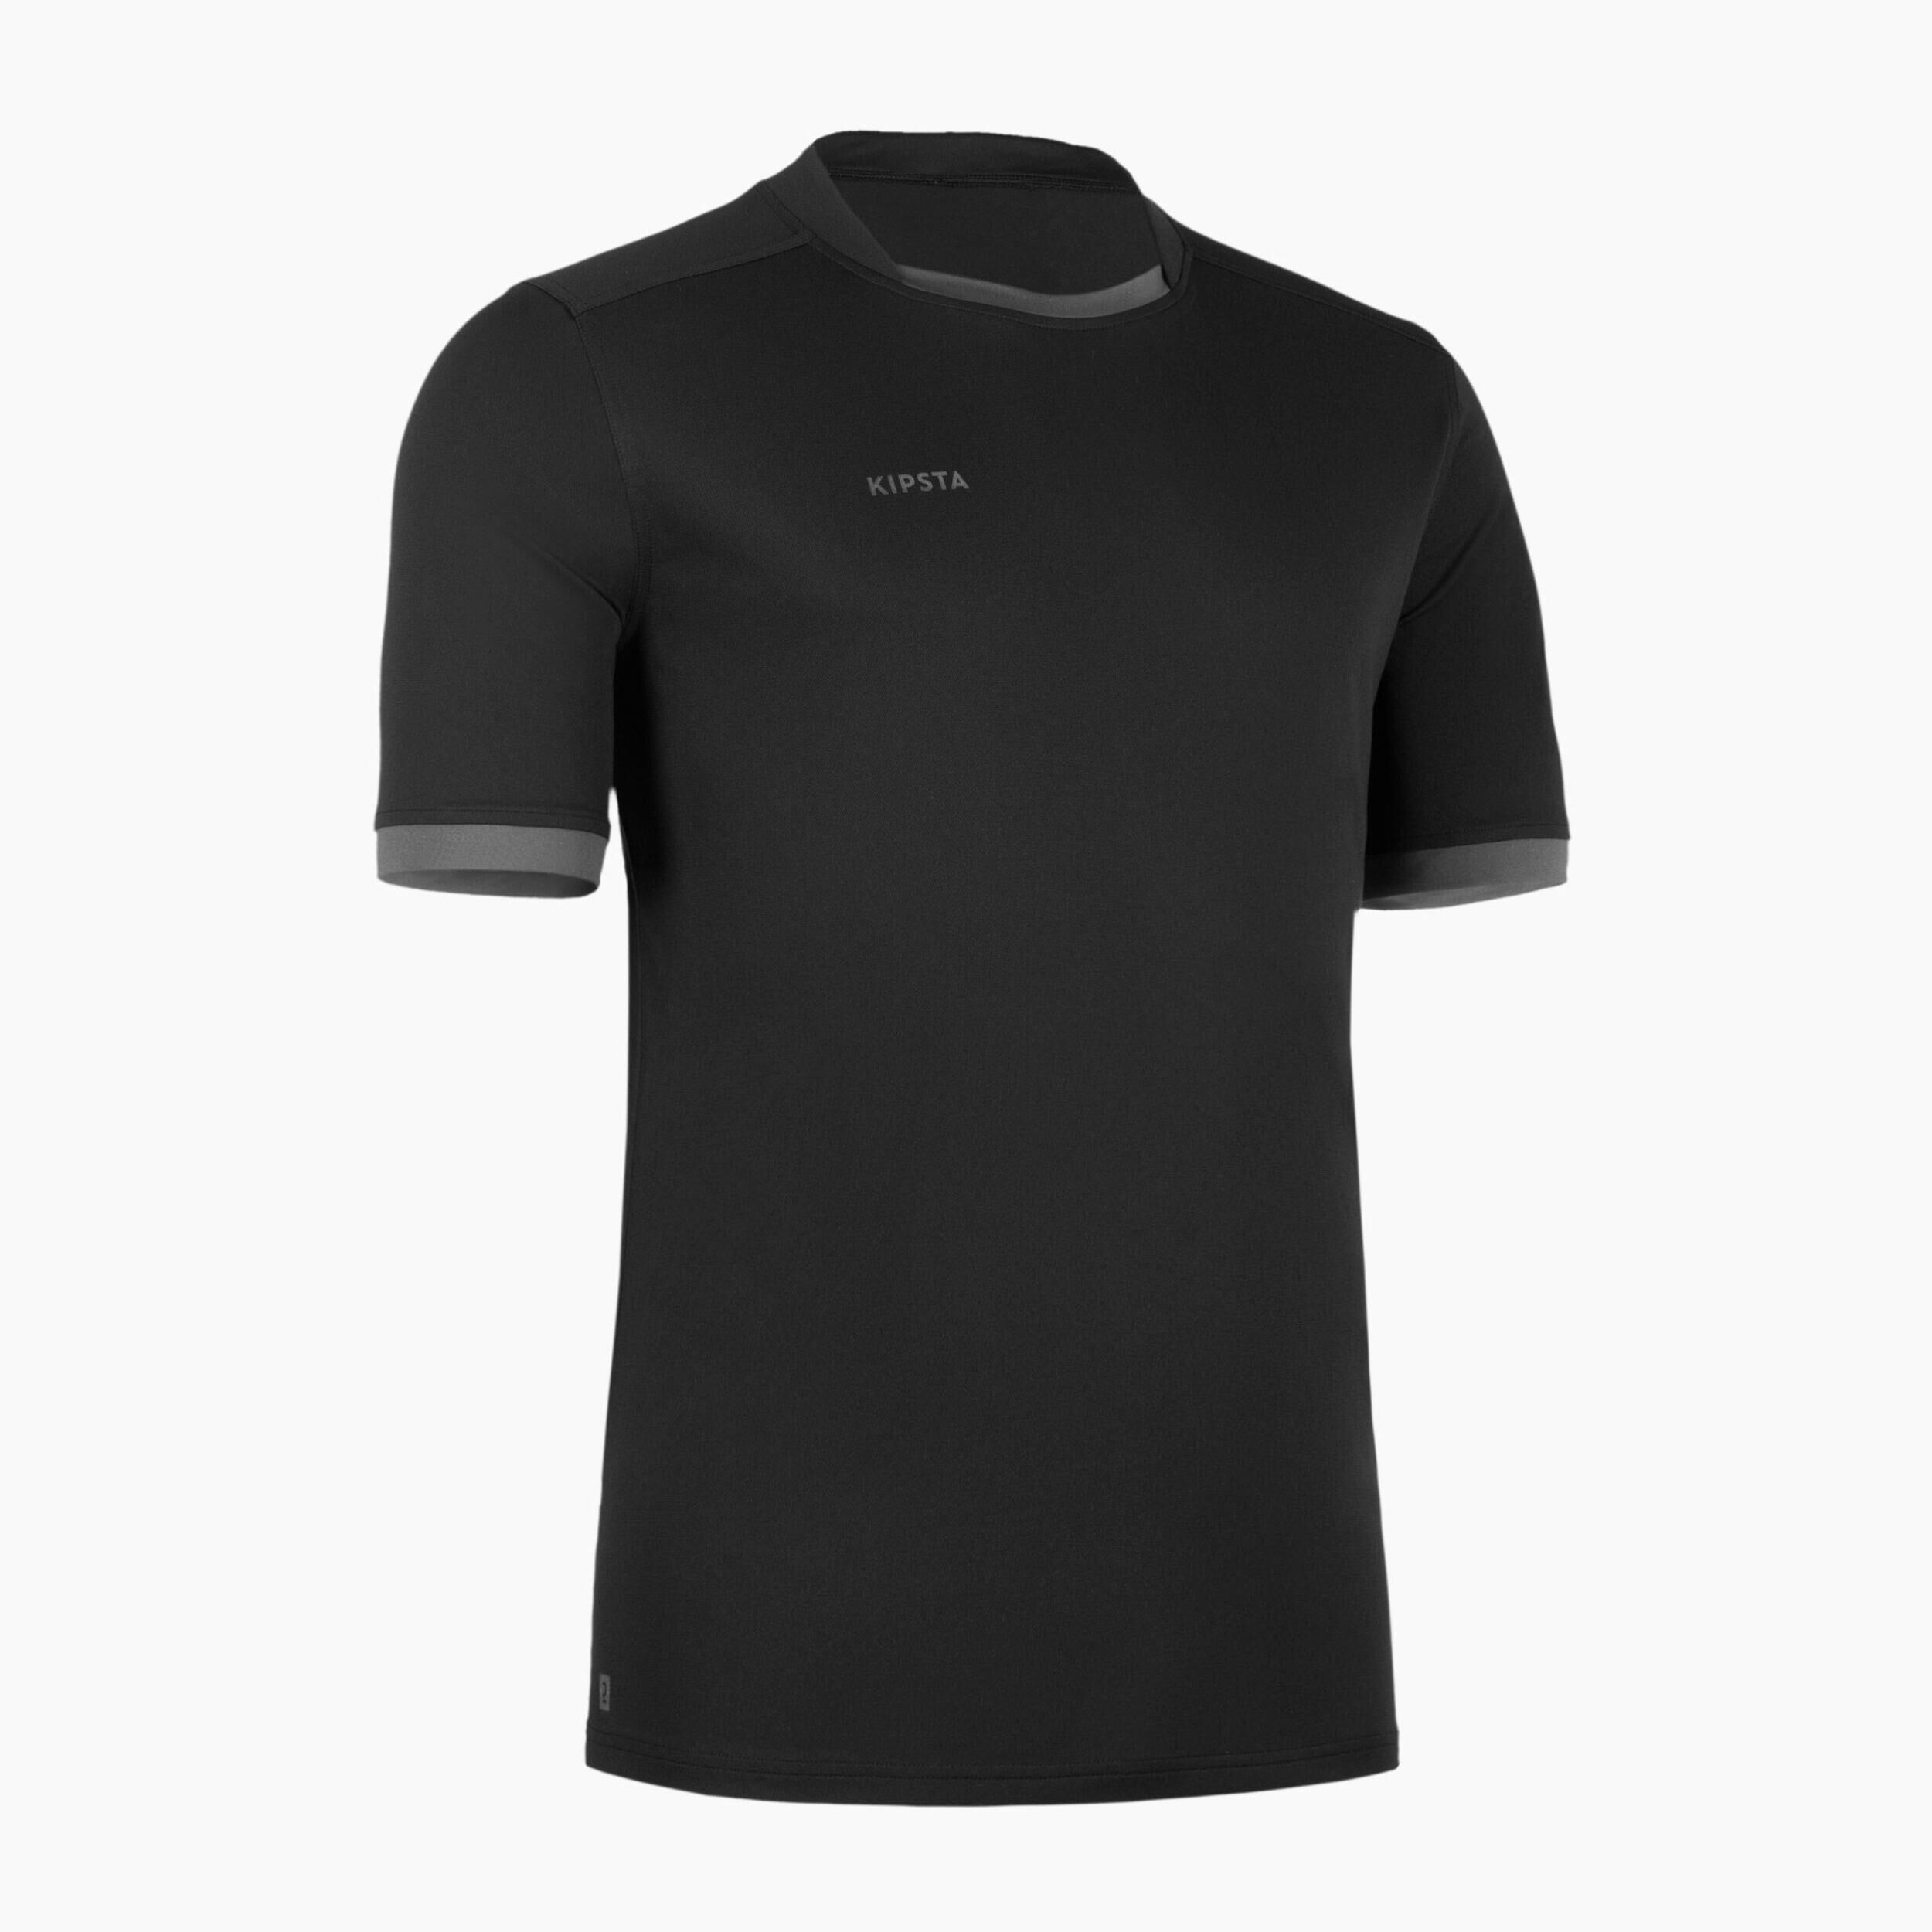 OFFLOAD Men's Short-Sleeved Rugby Shirt R100 - Black/Grey